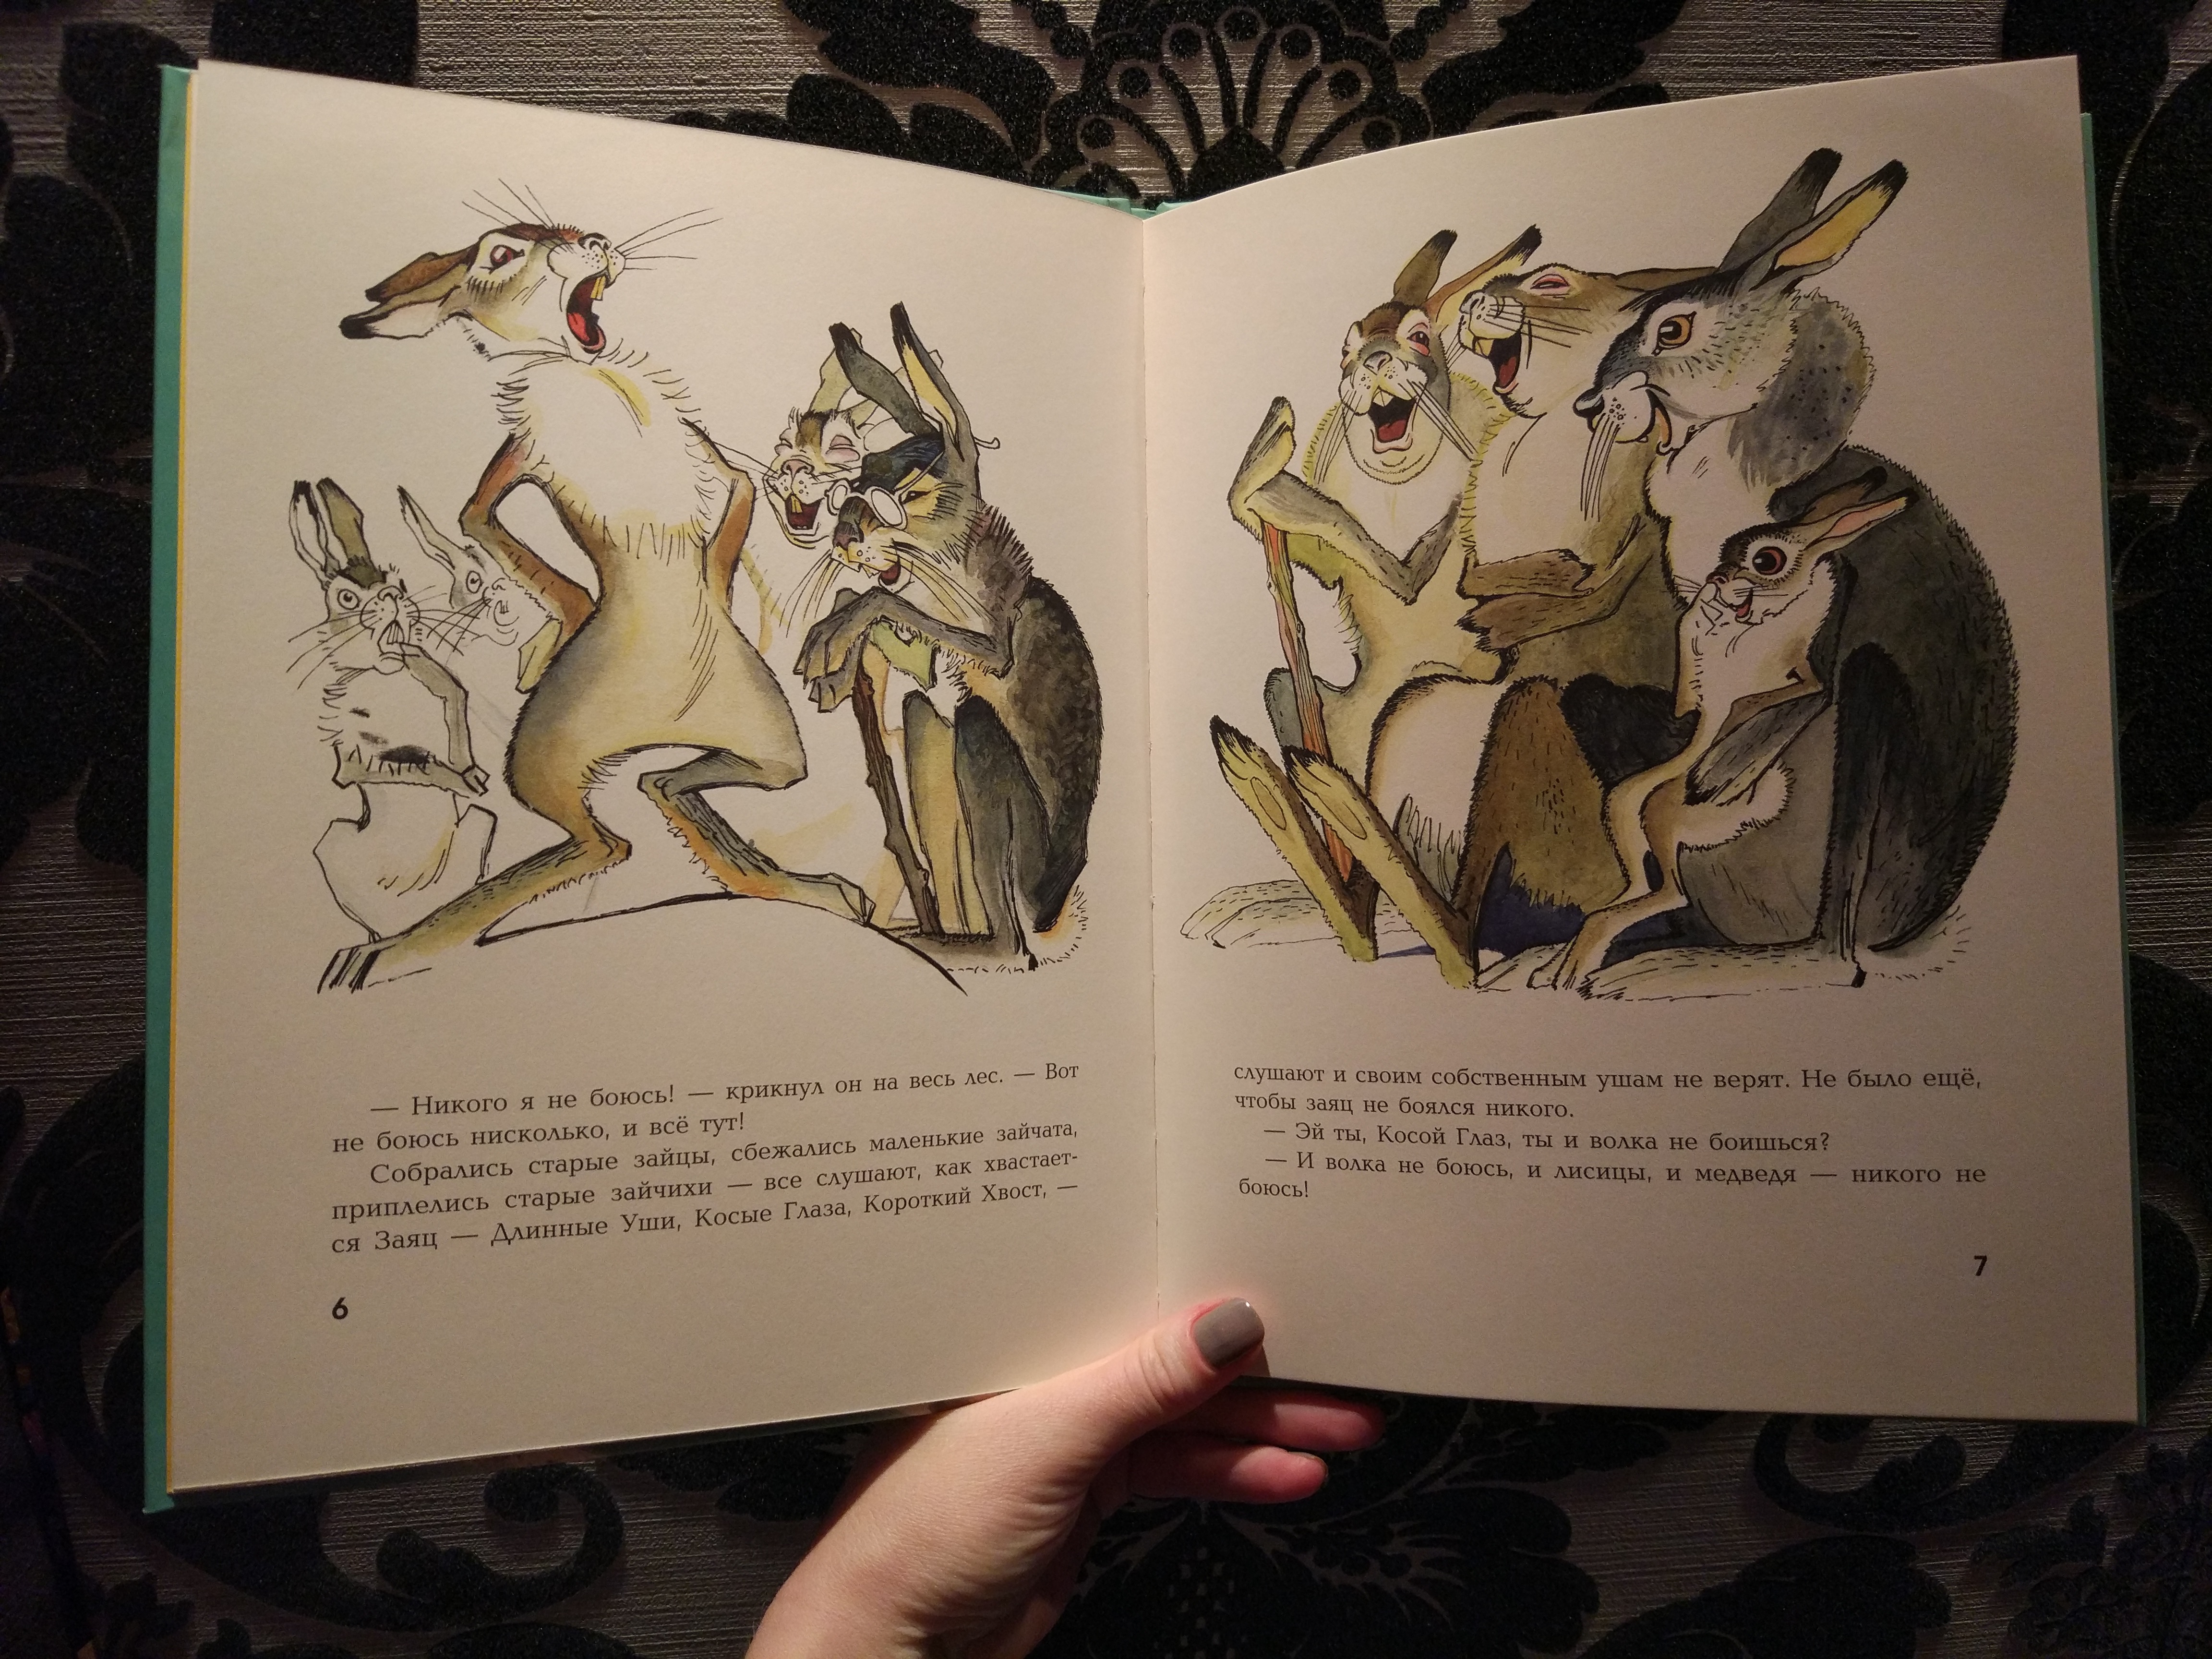 Про храброго зайца-длинные уши, косые глаза, короткий хвост сказка мамина-сибиряка читать онлайн текст